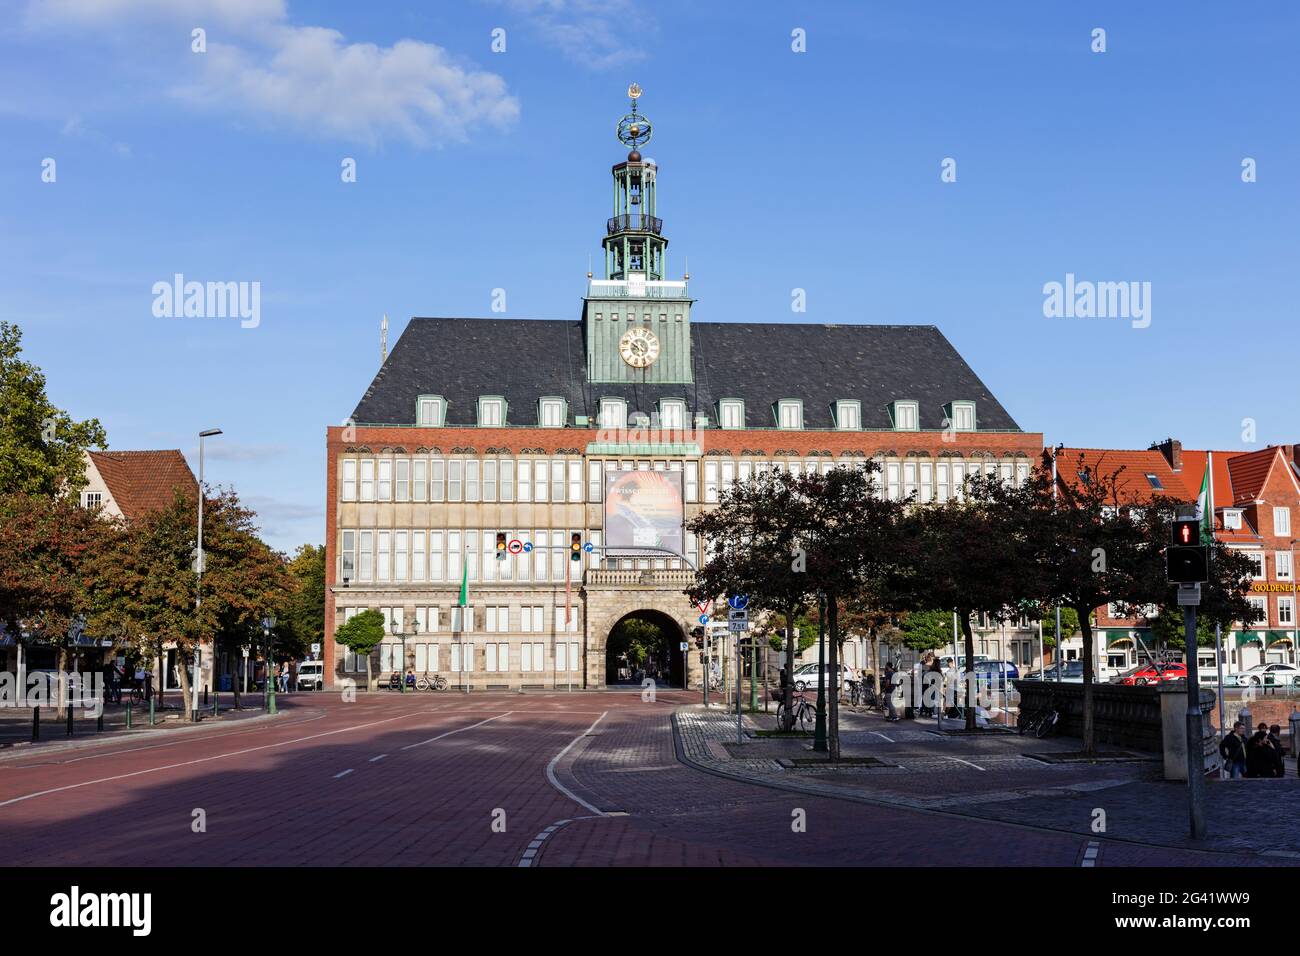 Das Rathaus von Emden, Rathaus, Emden, Ostfriesland, Niedersachsen, Deutschland Stockfoto